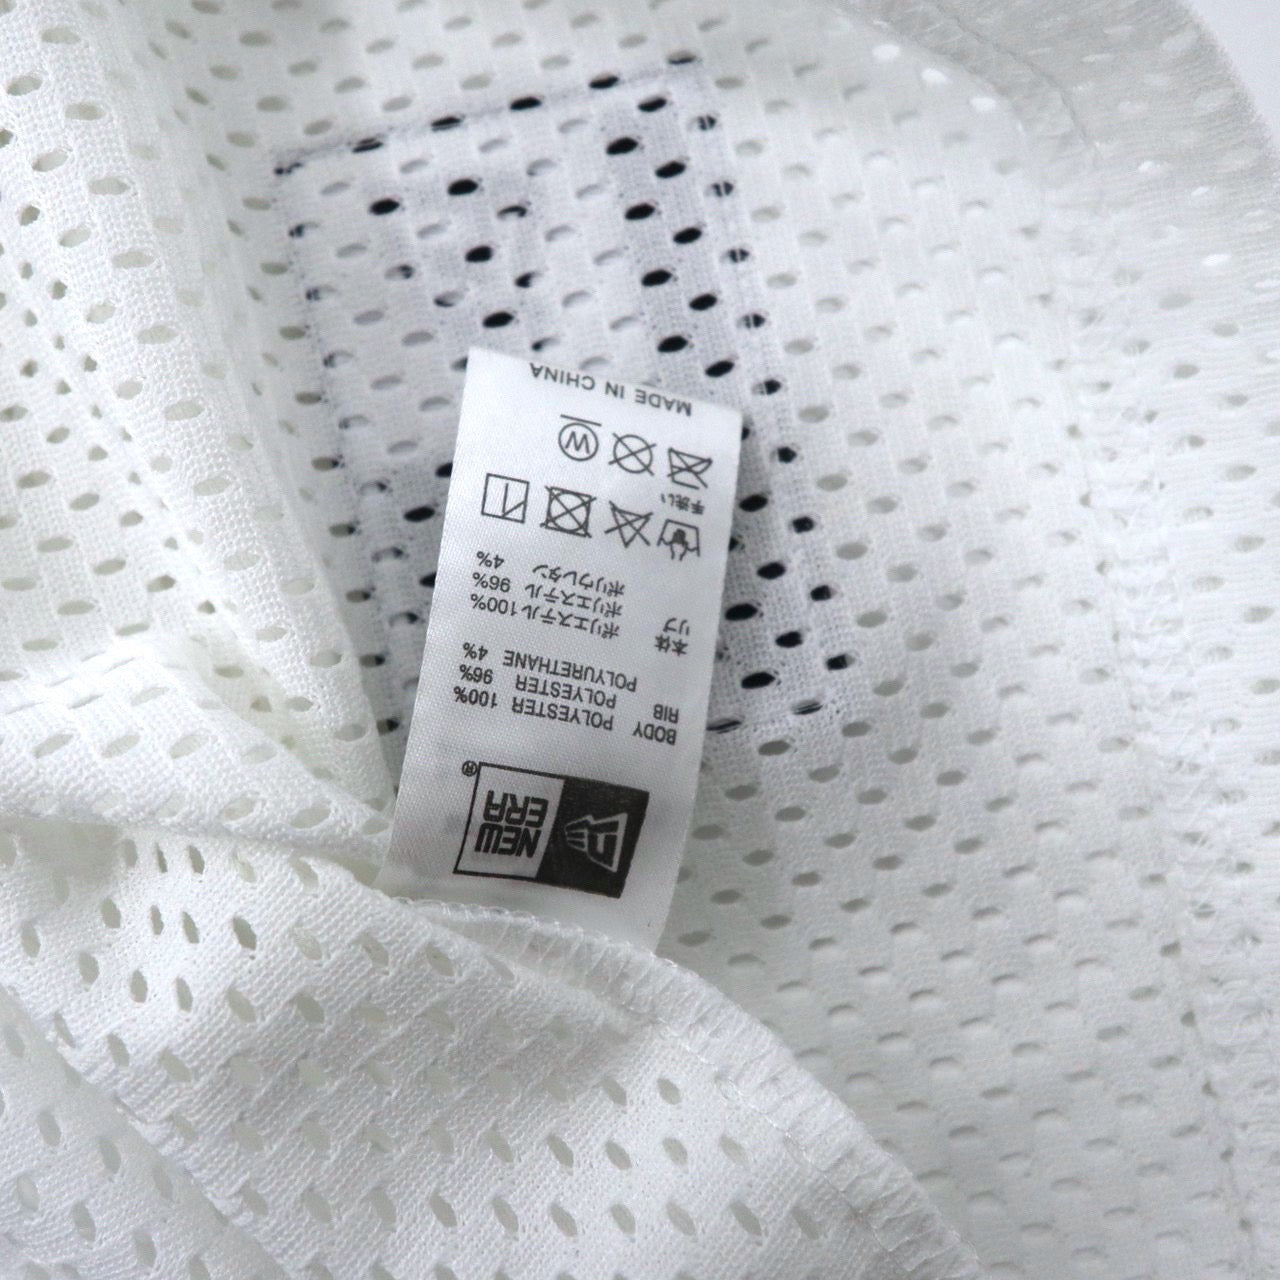 NEWERA ビッグサイズ メッシュTシャツ XL ホワイト ポリエステル SS MESH TEE 未使用品